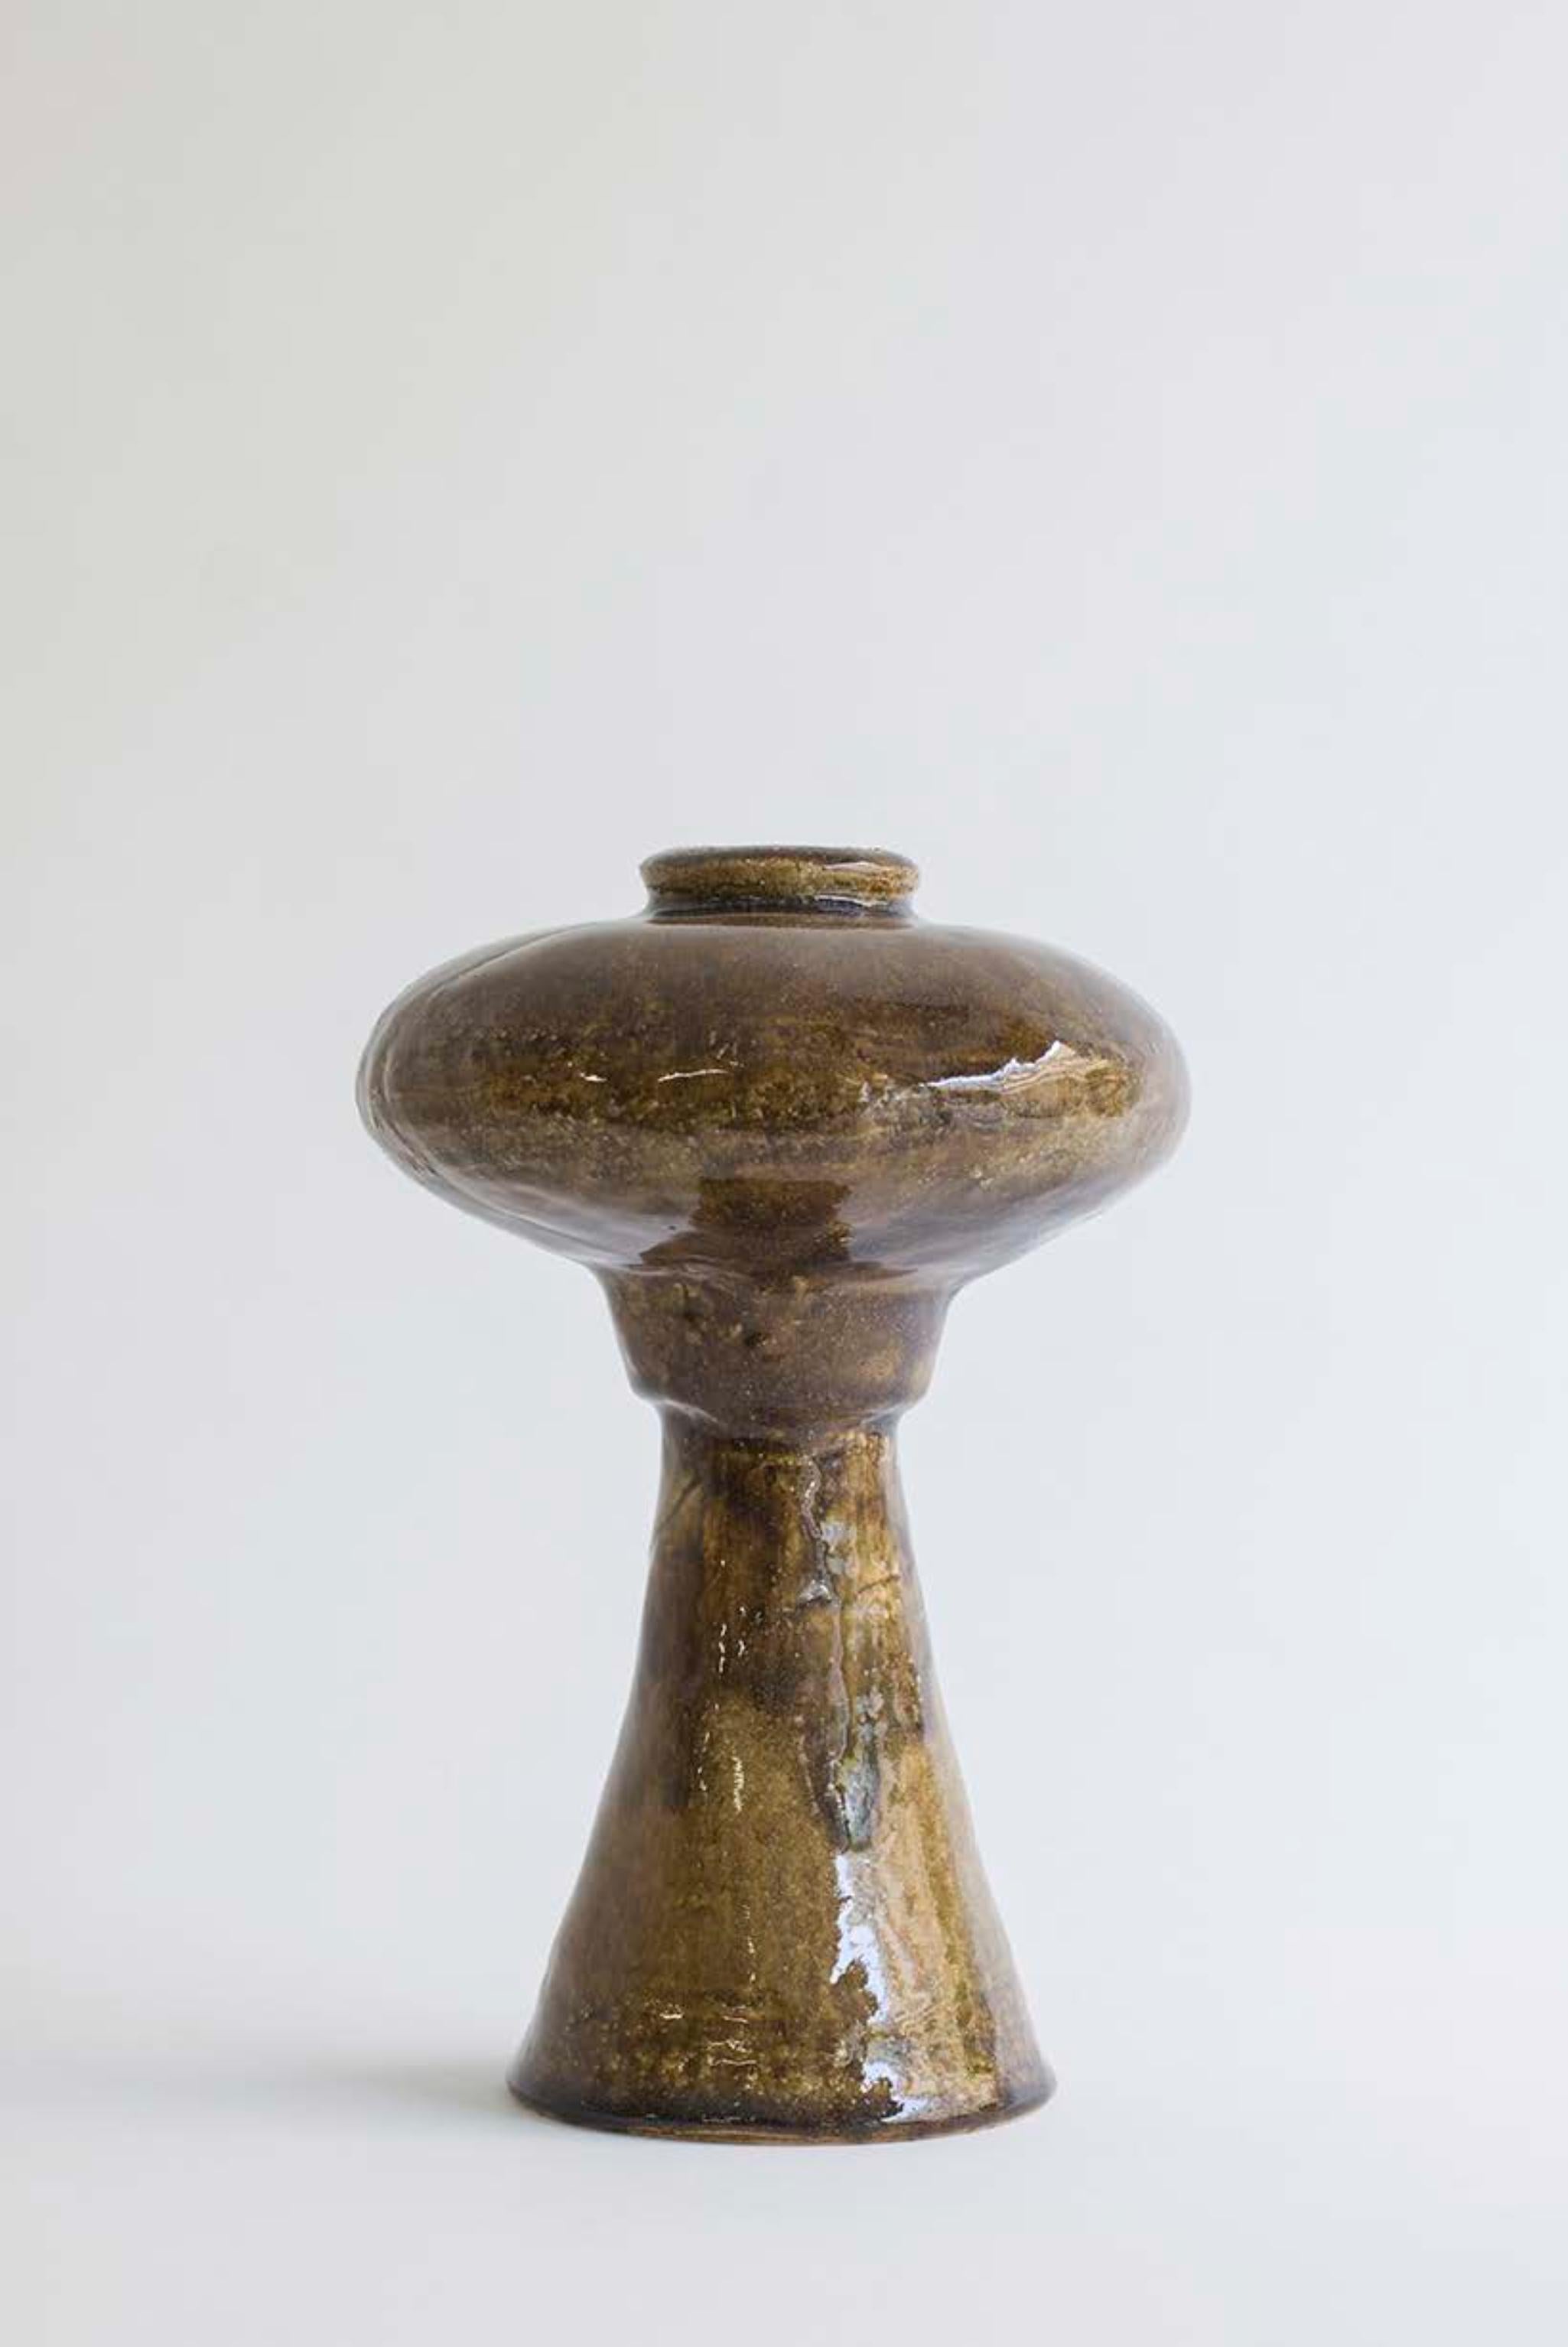 Einzigartige Vase Arq 009 von Raquel Vidal und Pedro Paz
Abmessungen: Ø 15 x H 23 cm
MATERIAL: handgeformtes glasiertes Steinzeug.

Die Arq-Serie ist aus unserer eigenen Produktion hervorgegangen. Sie lässt sich von der Archäologie inspirieren und